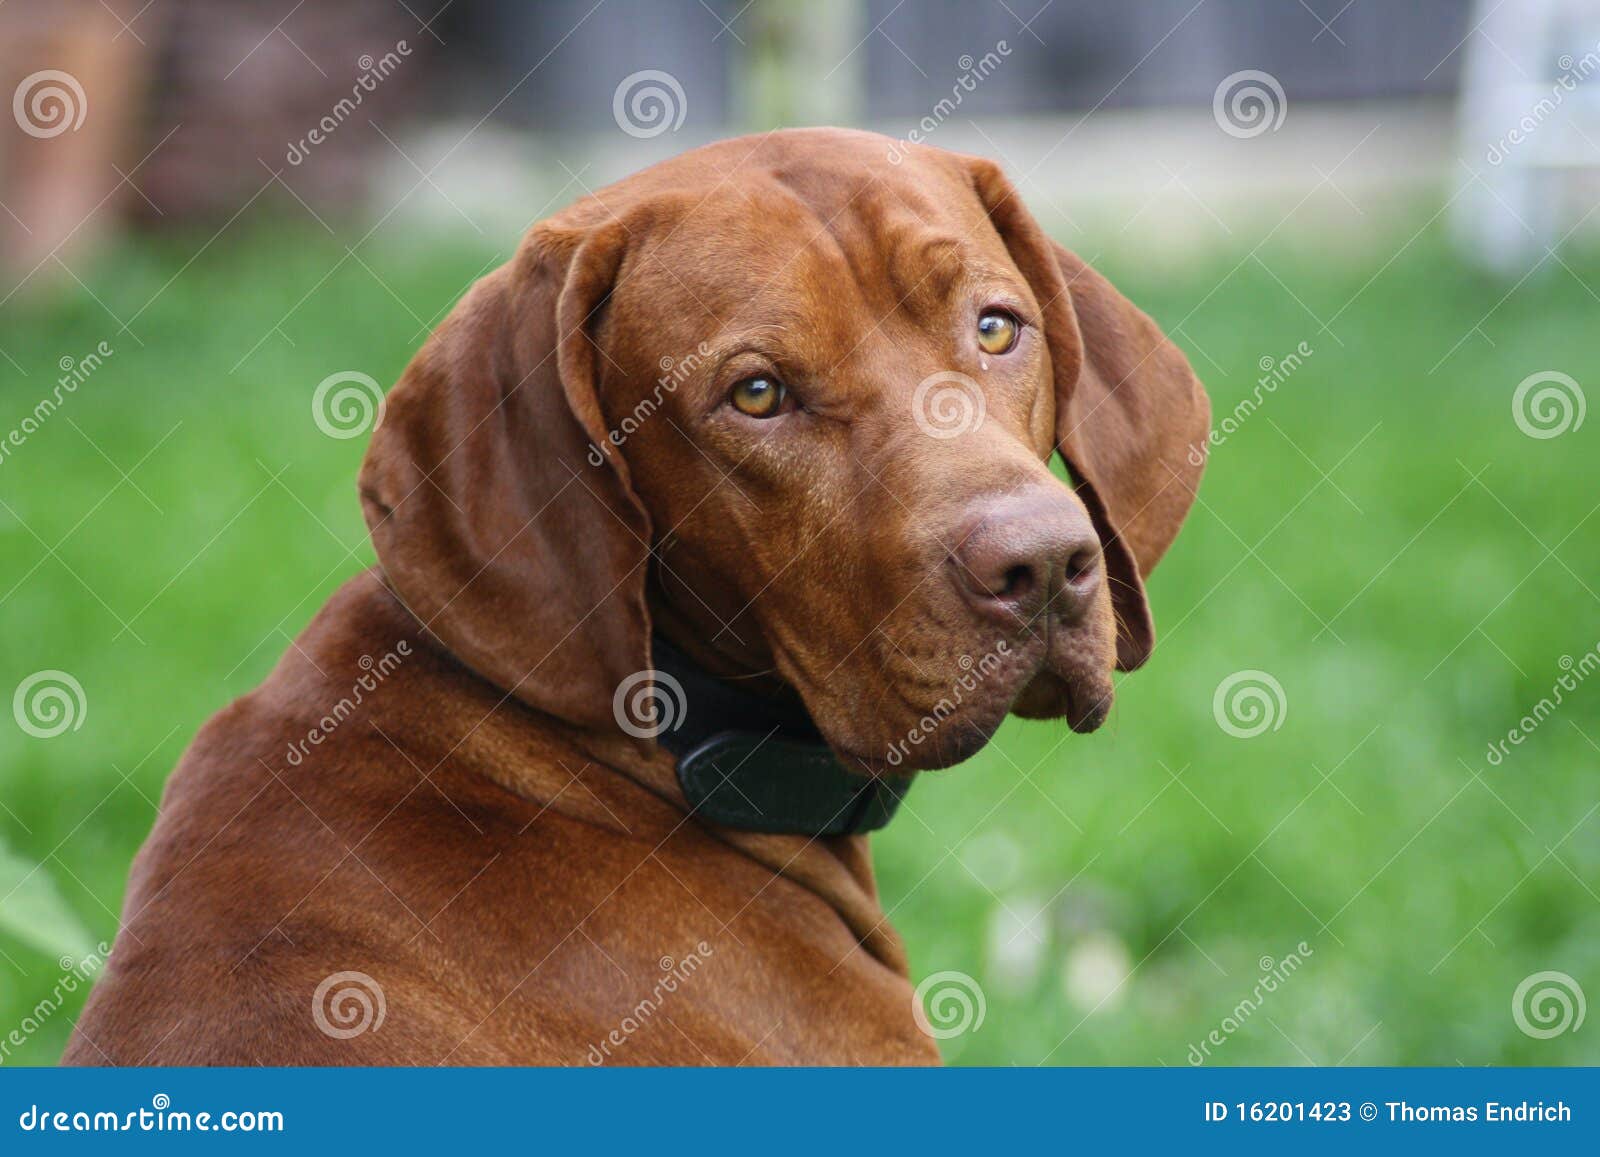 pædagog Vågn op sort Magyar Vizsla Hund stockbild. Bild von hund, säugetier - 16201423